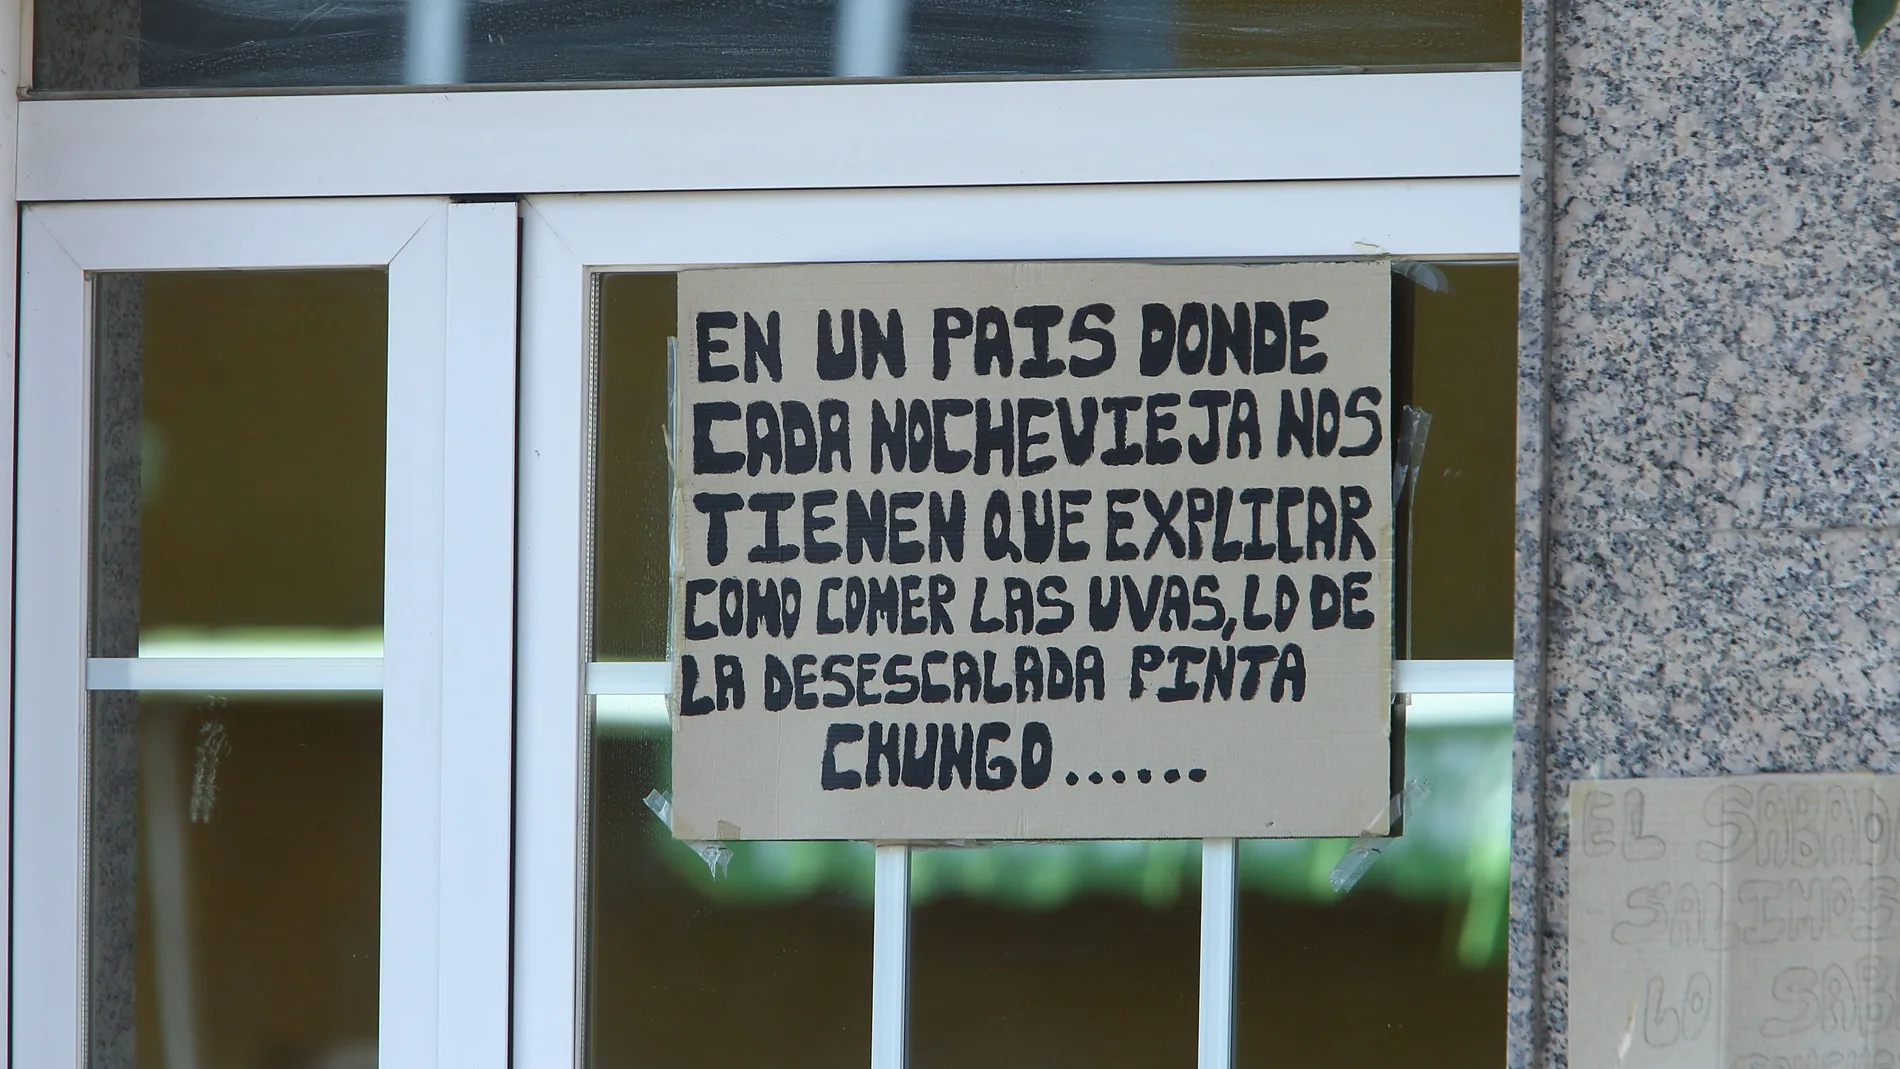 Pancarta irónica y humoristica en una casa de la localidad leonesa de Comporanaya